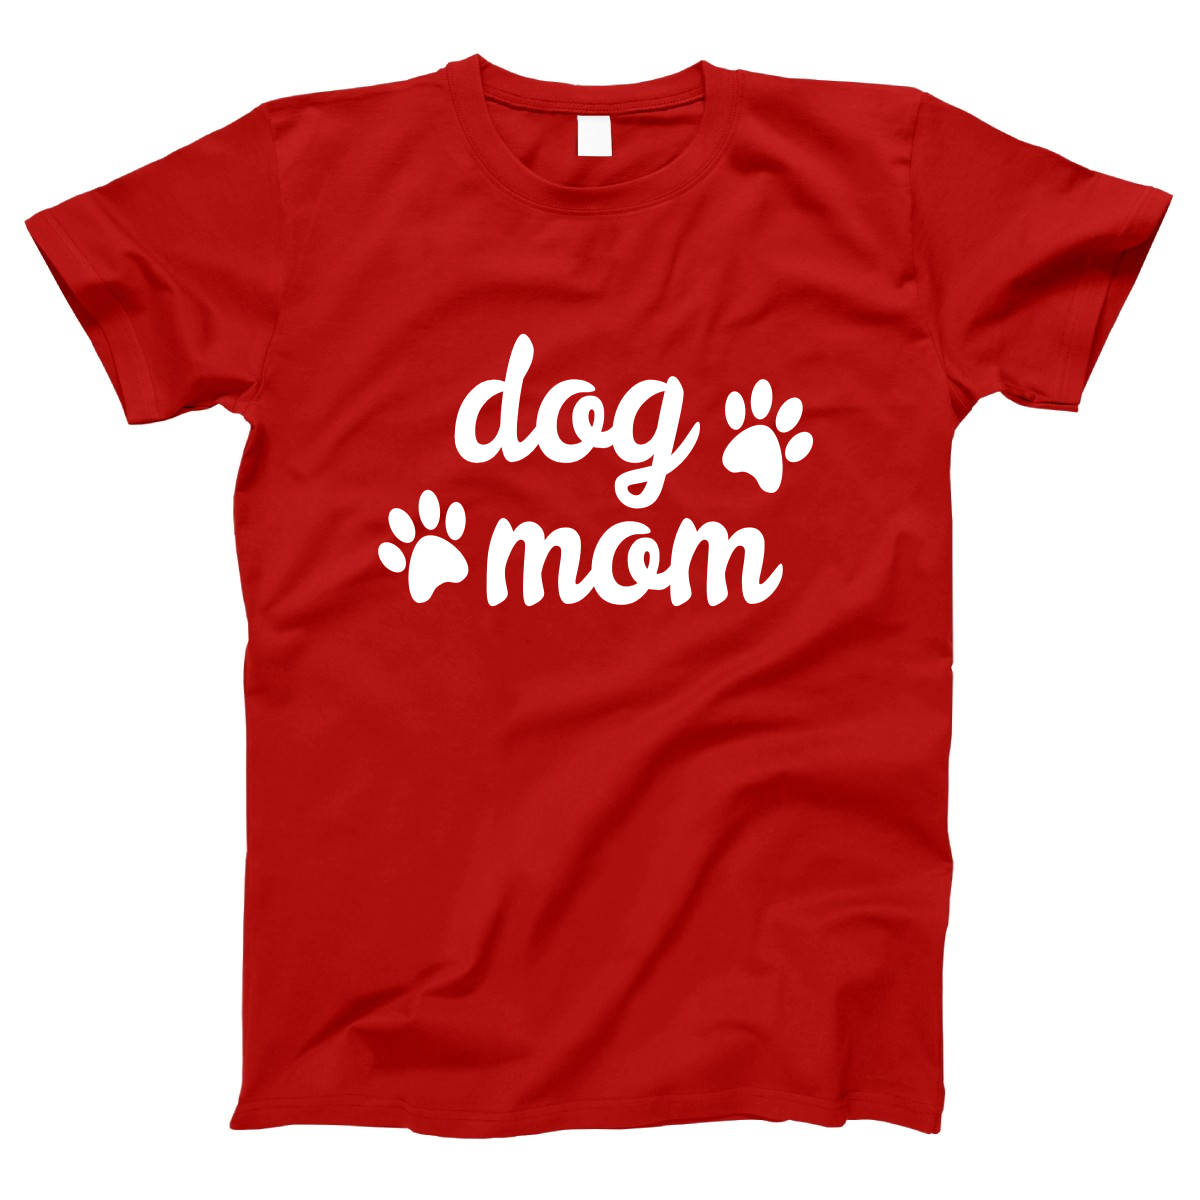 Dog Mom Women's T-shirt | Red